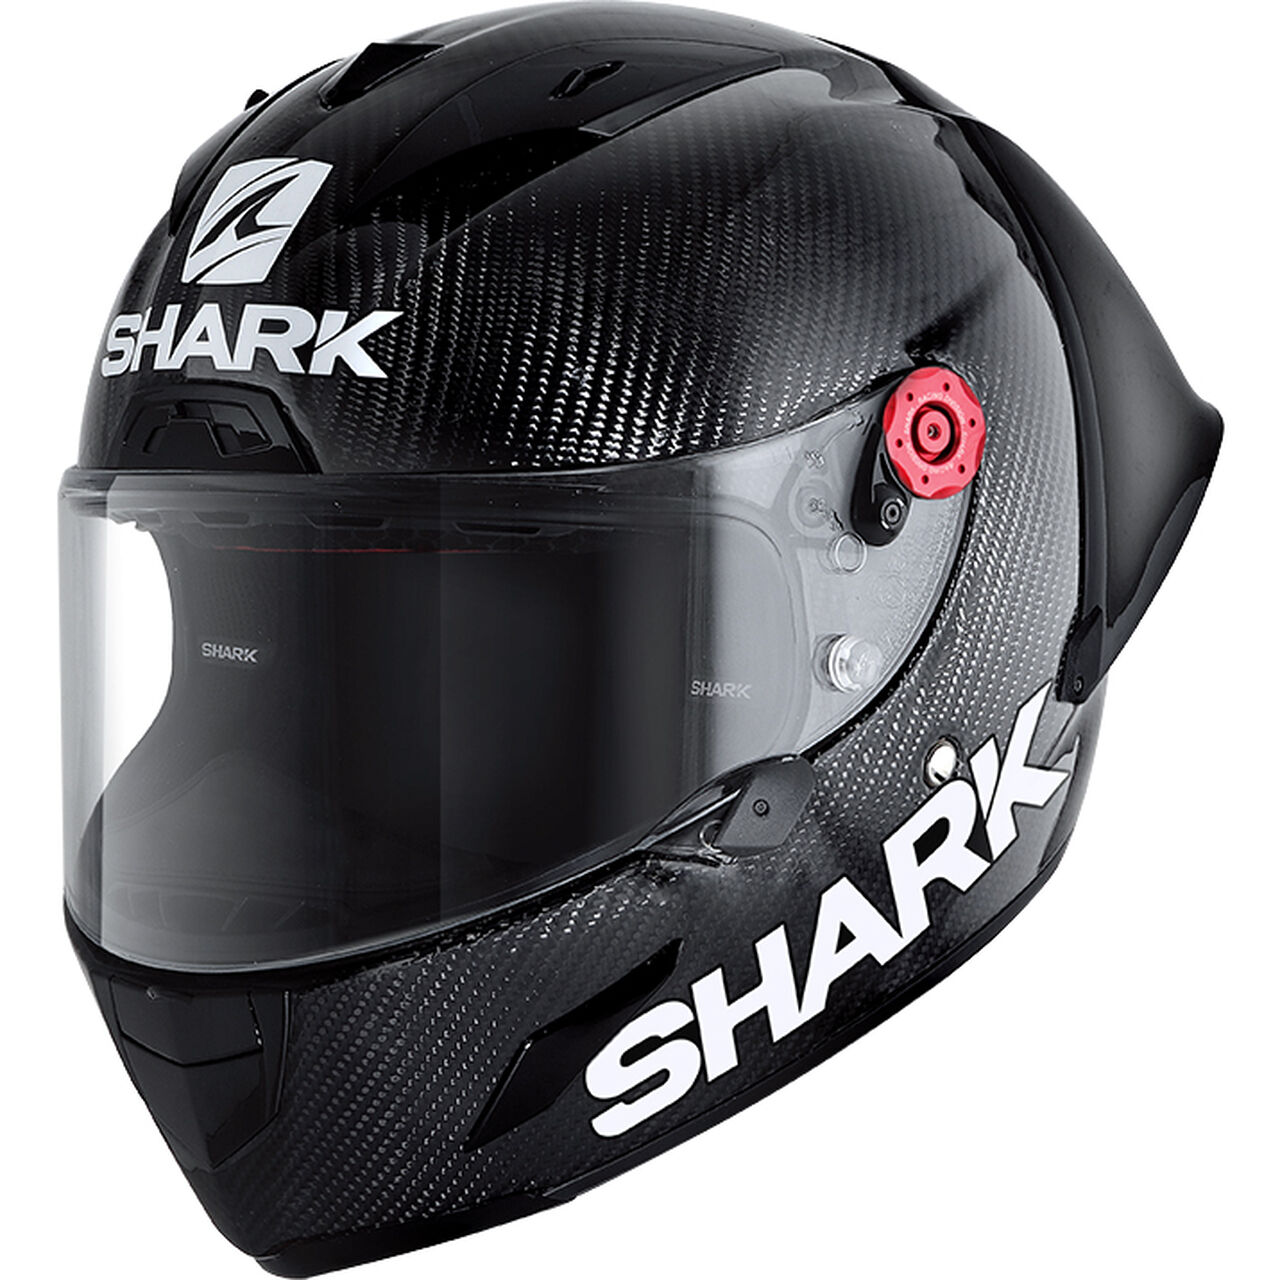 helmets Race-R Pro GP Carbon for EUR 649.99 Motorrad